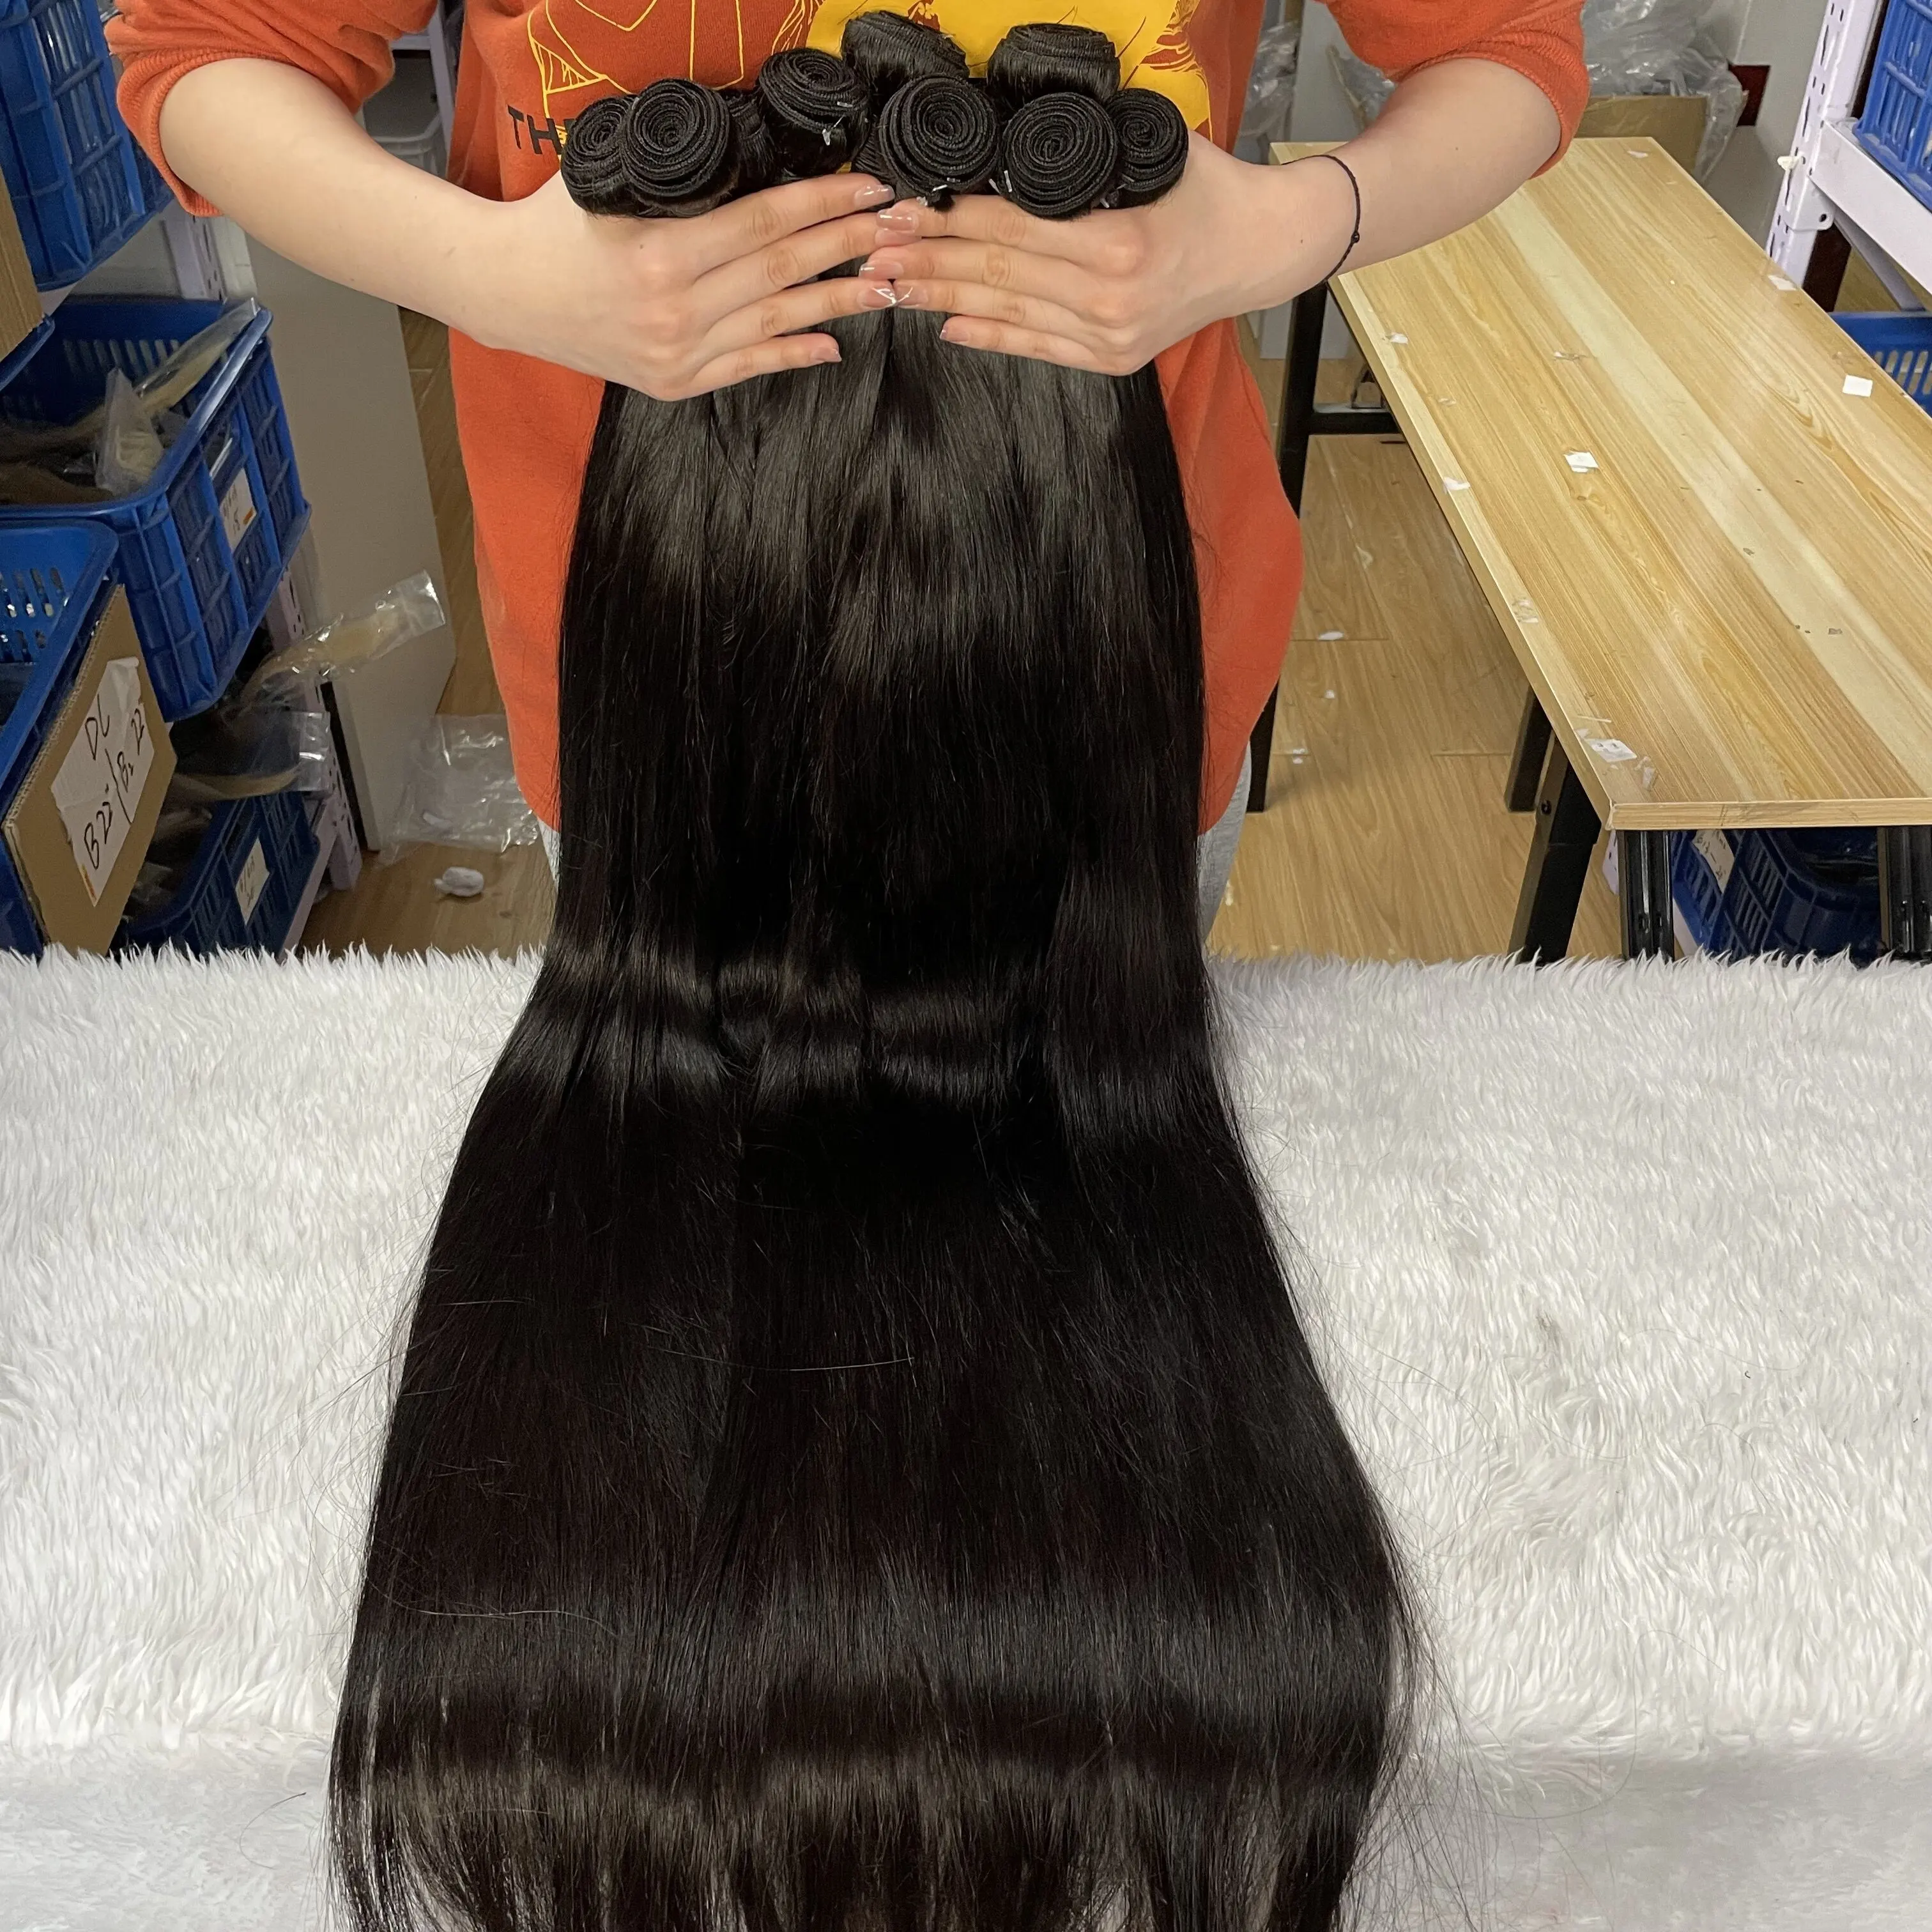 High Quality Remy Hair Weave,virgin Hair , Cheap Human Hair Hair Extension Brazilian Hair Natural Color Full Cuticles Aligned